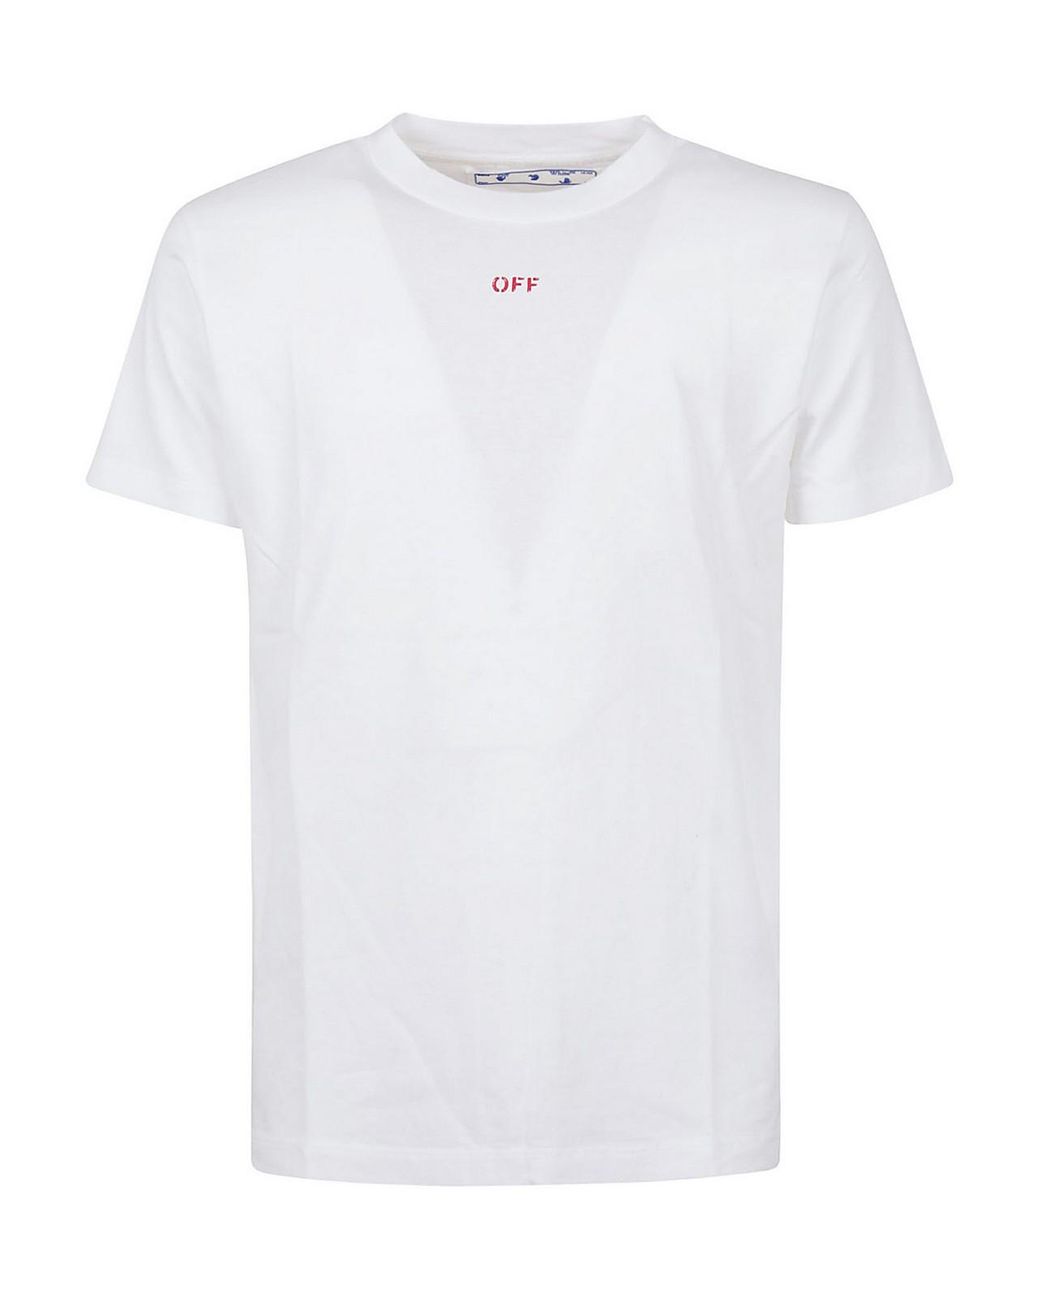 Off-White c/o Virgil Abloh Stencil T-shirt in White for Men - Lyst